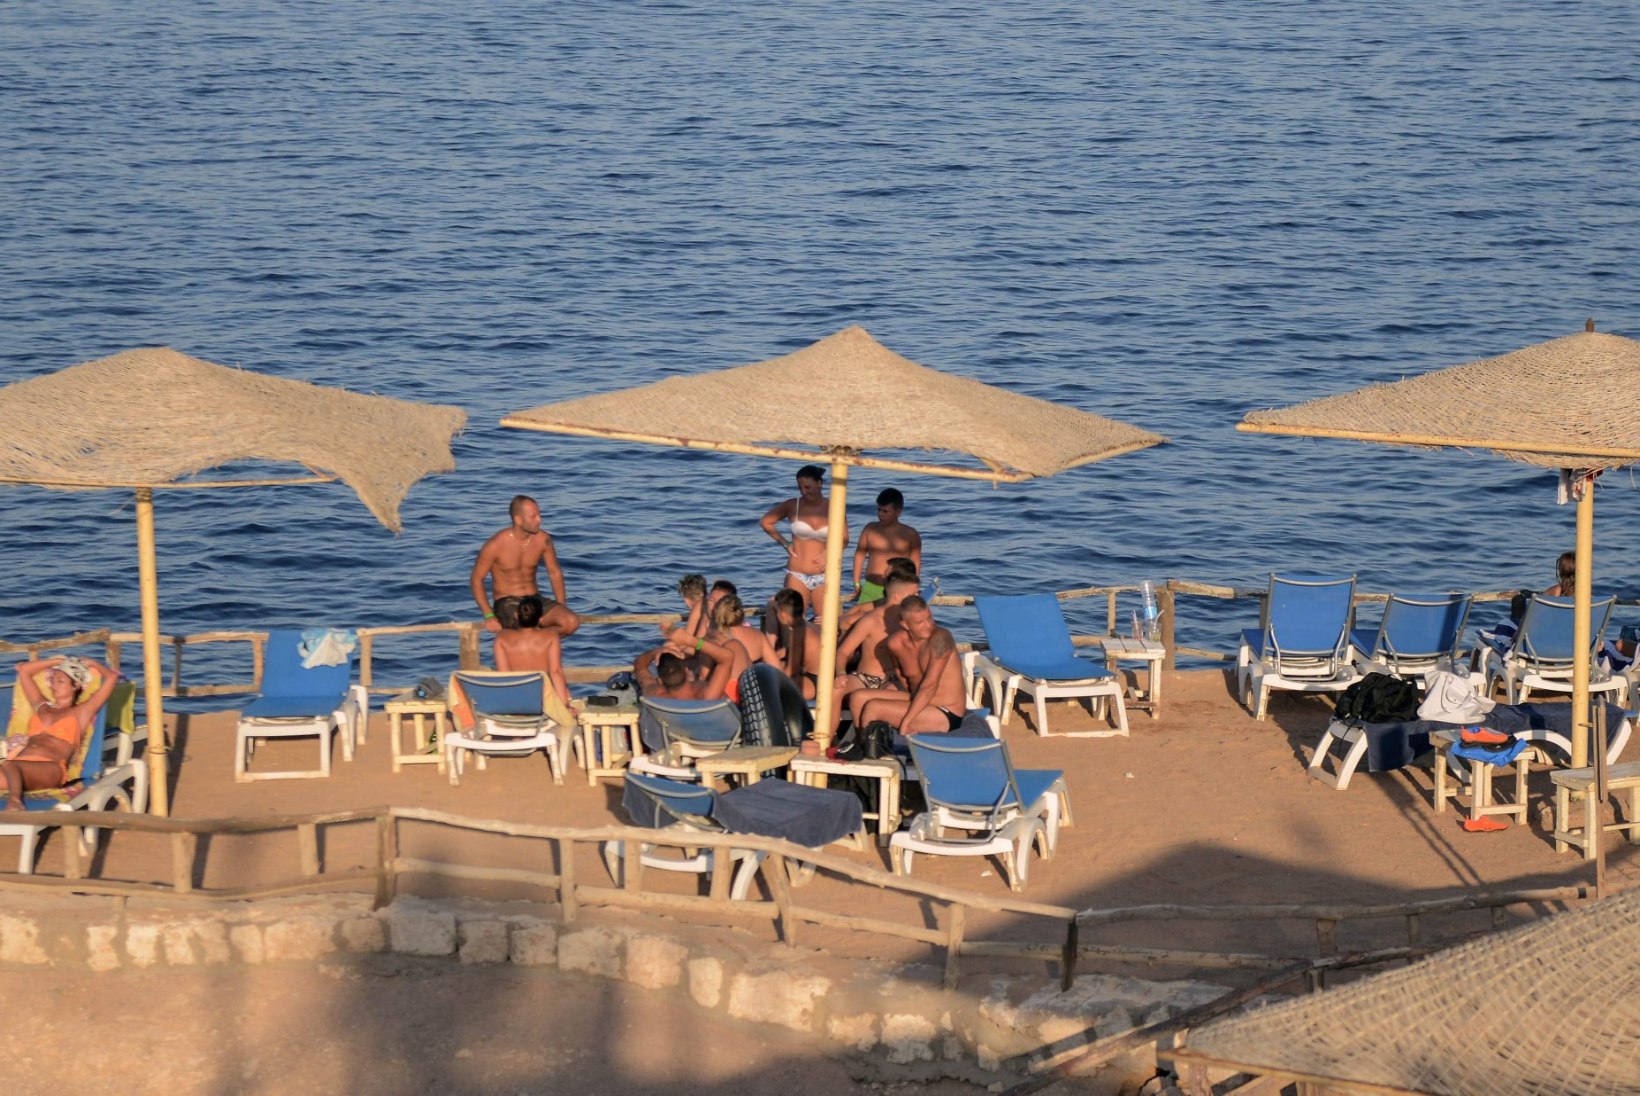 Ujuda tahtnud turist peksis laste silme ees Egiptuse hotelli juhataja surnuks